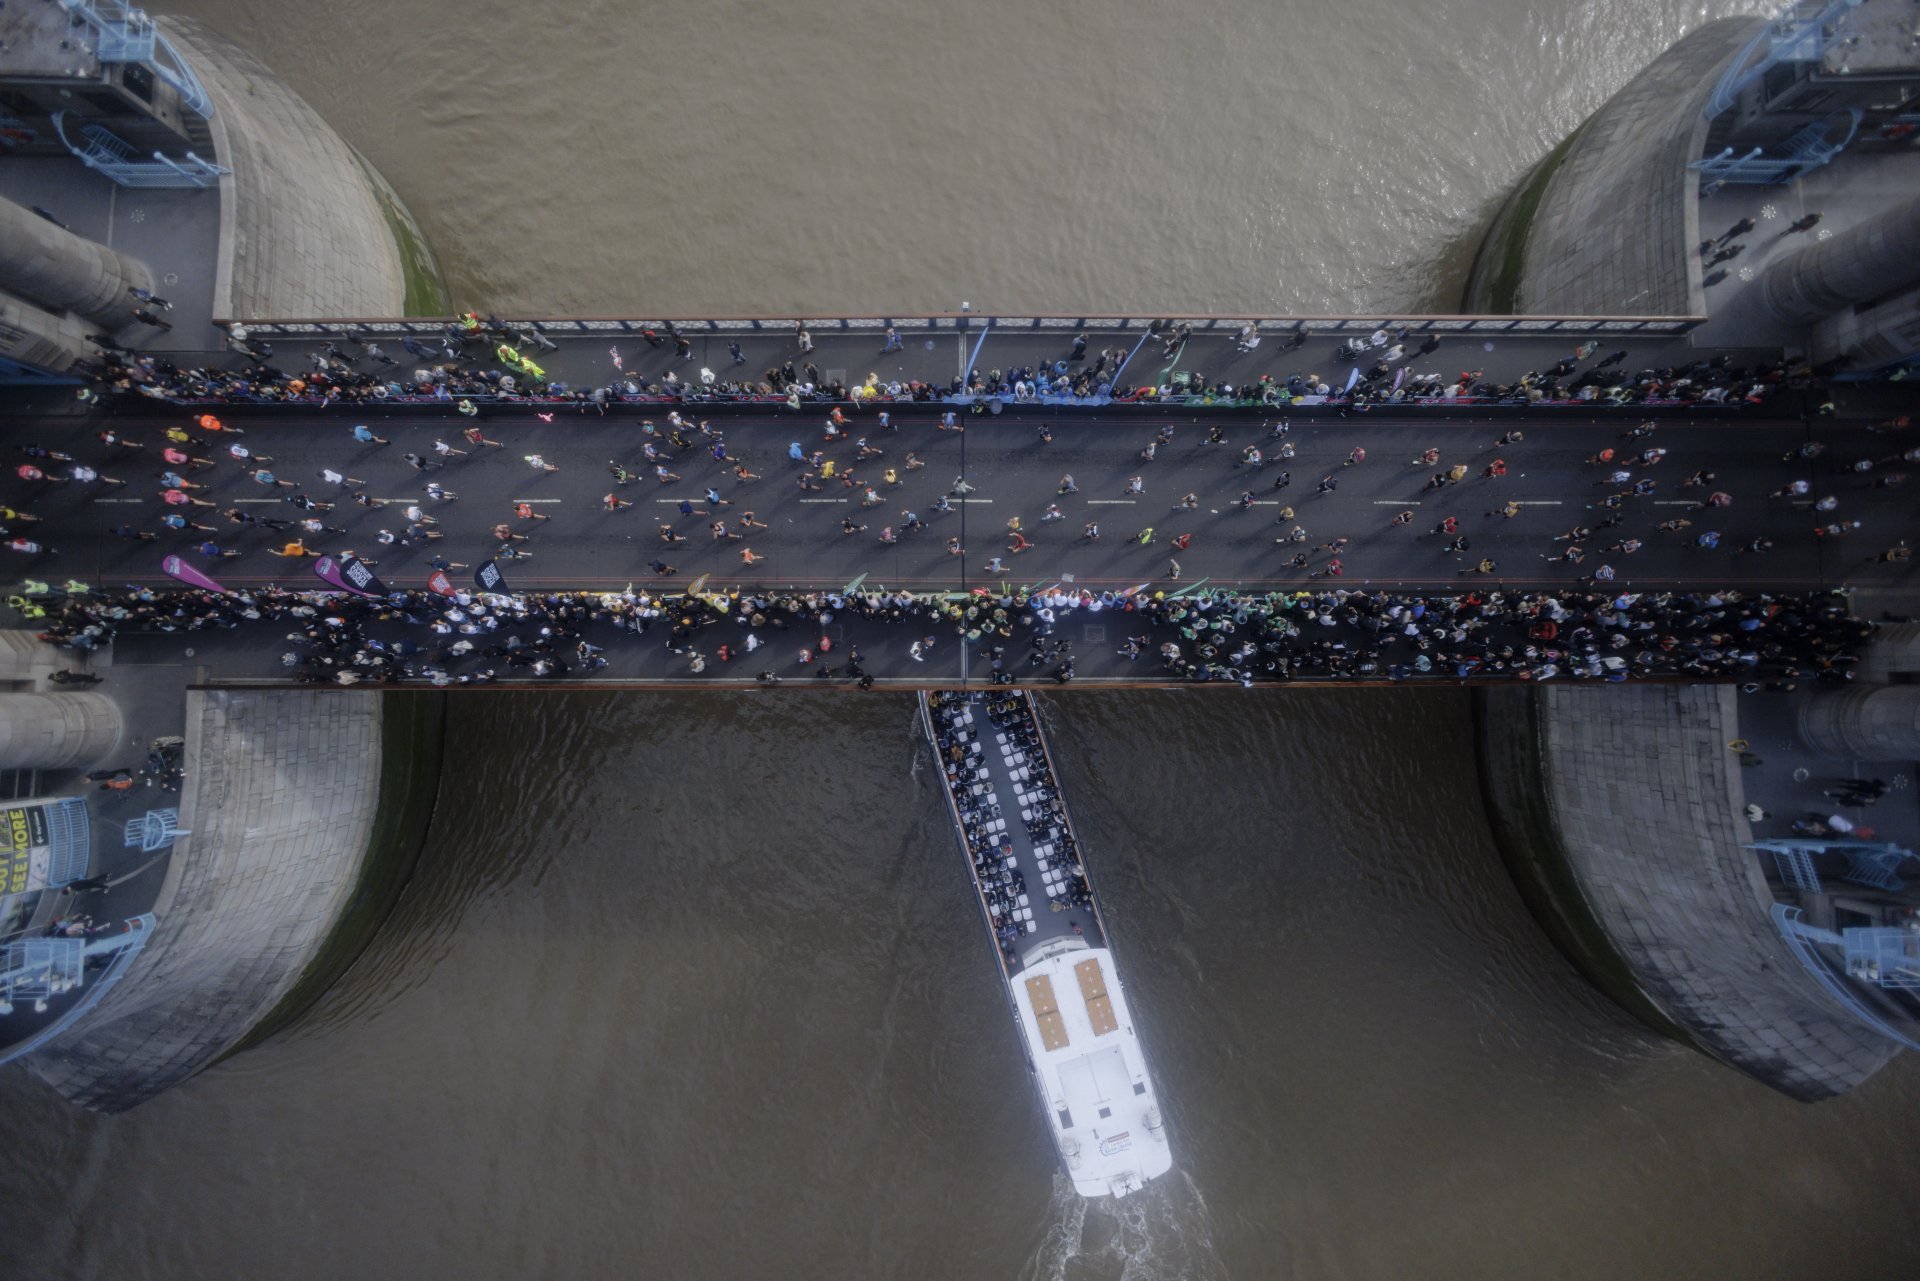  Участници в маратона пресичат Тауър Бридж. Гледката се вижда от високия стъклен под на Тауър Бридж над река Темза. 